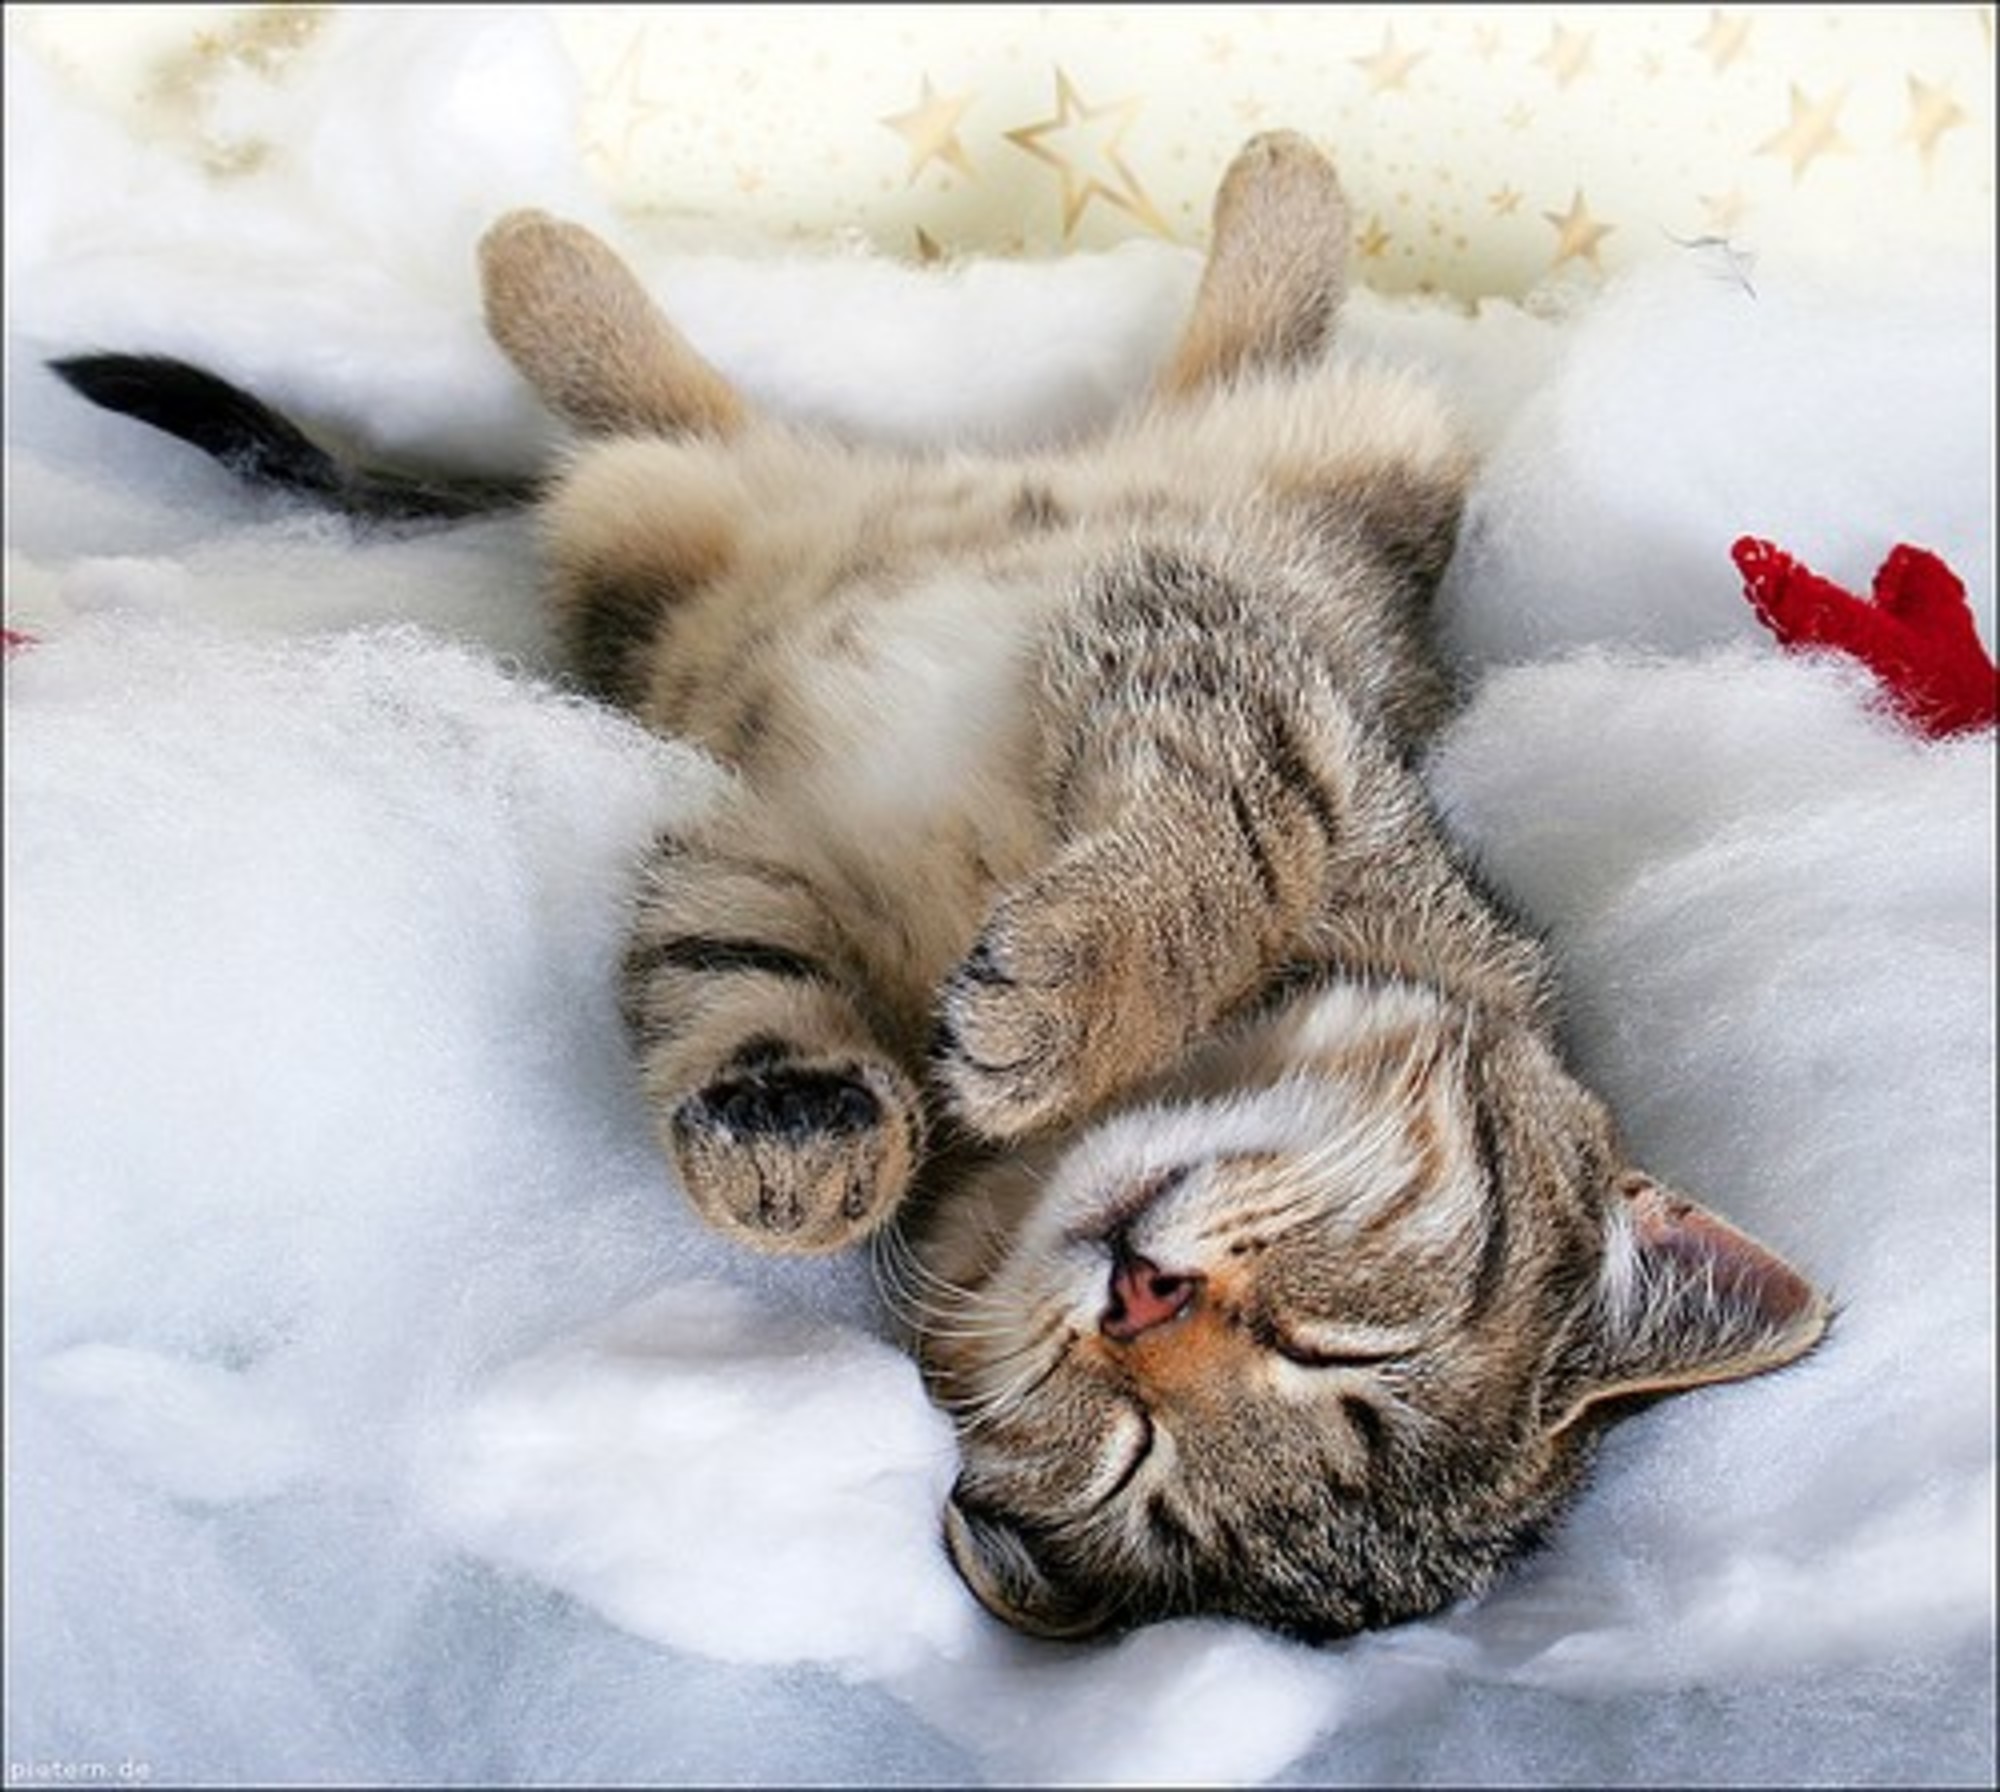 Sleeping Beauty - Love Meow